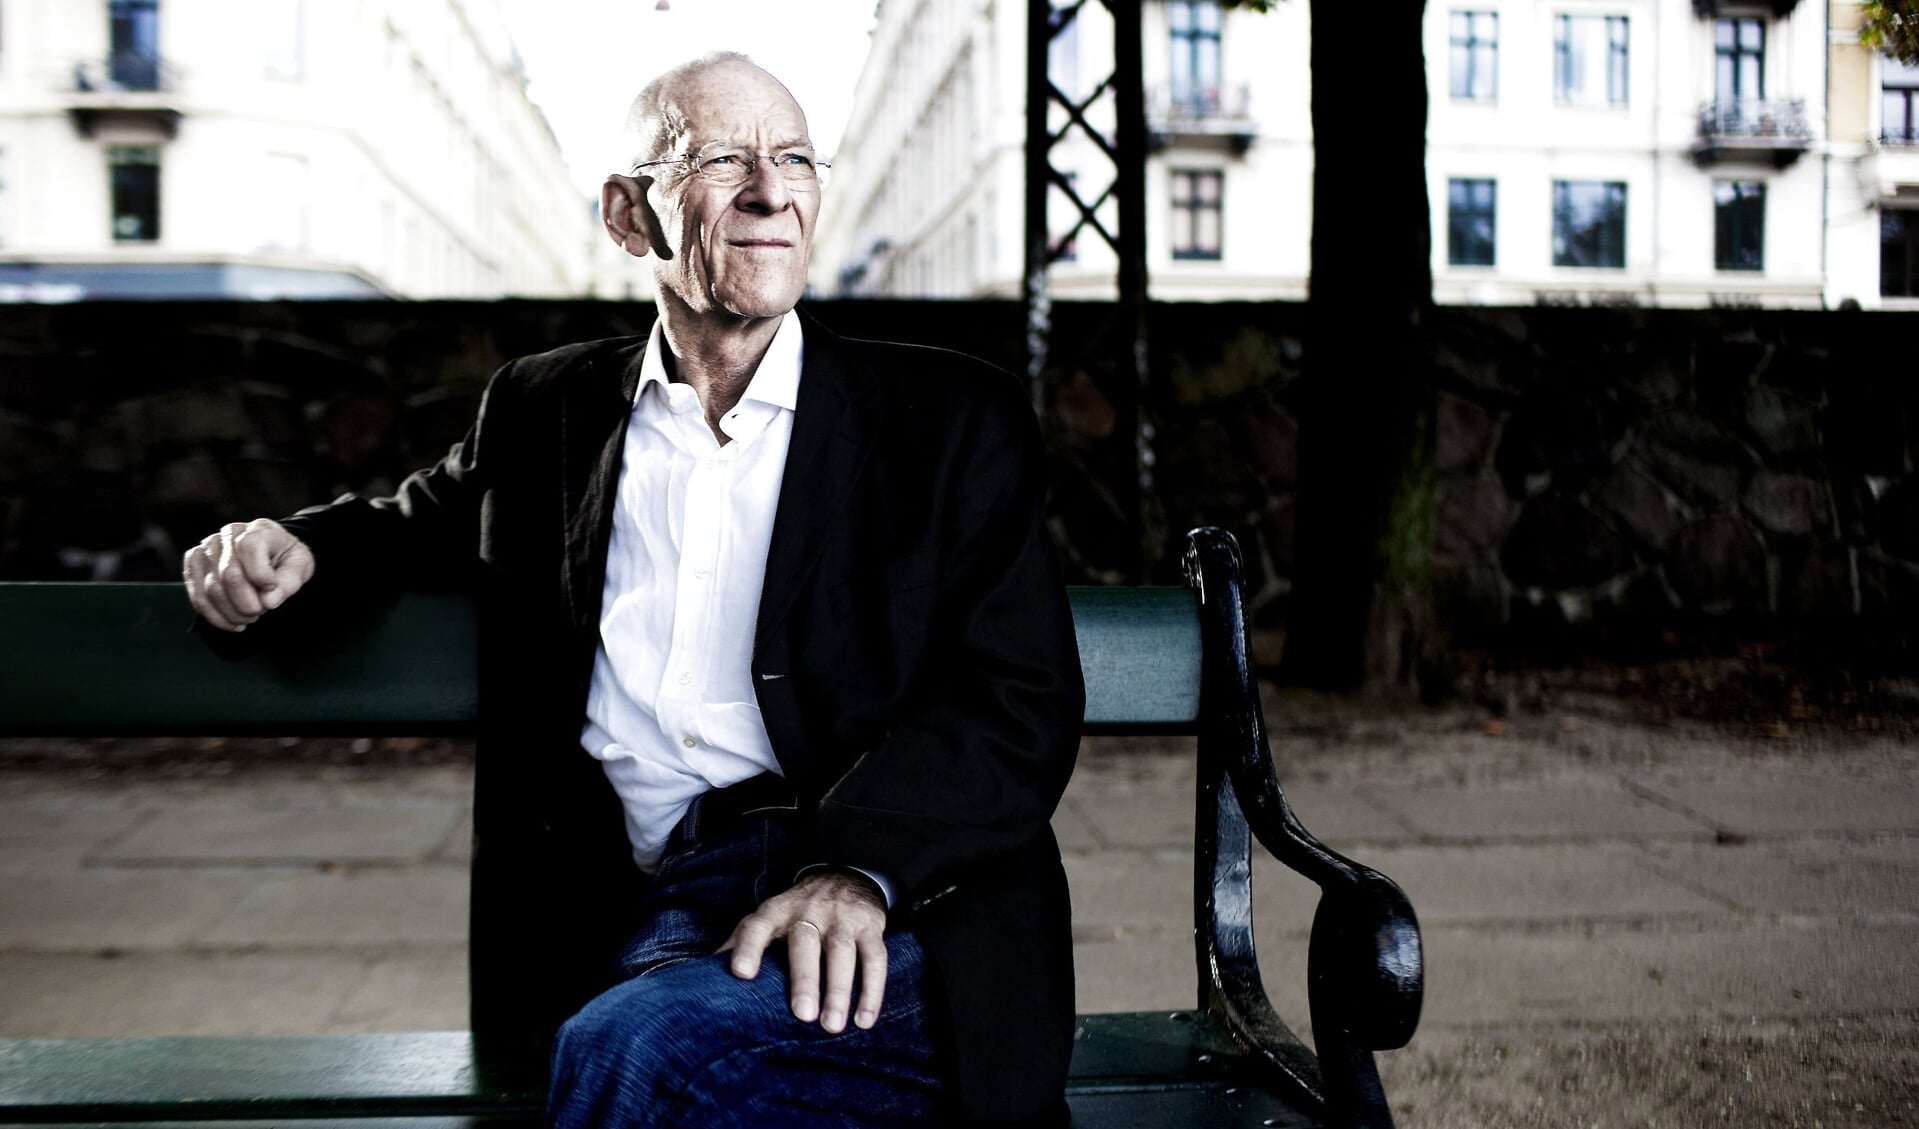 Forfatteren Henrik Nordbrandt er død tirsdag morgen efter kort tids sygdom. Han blev 77 år. Det oplyser familien til Gyldendal. (Arkivfoto)